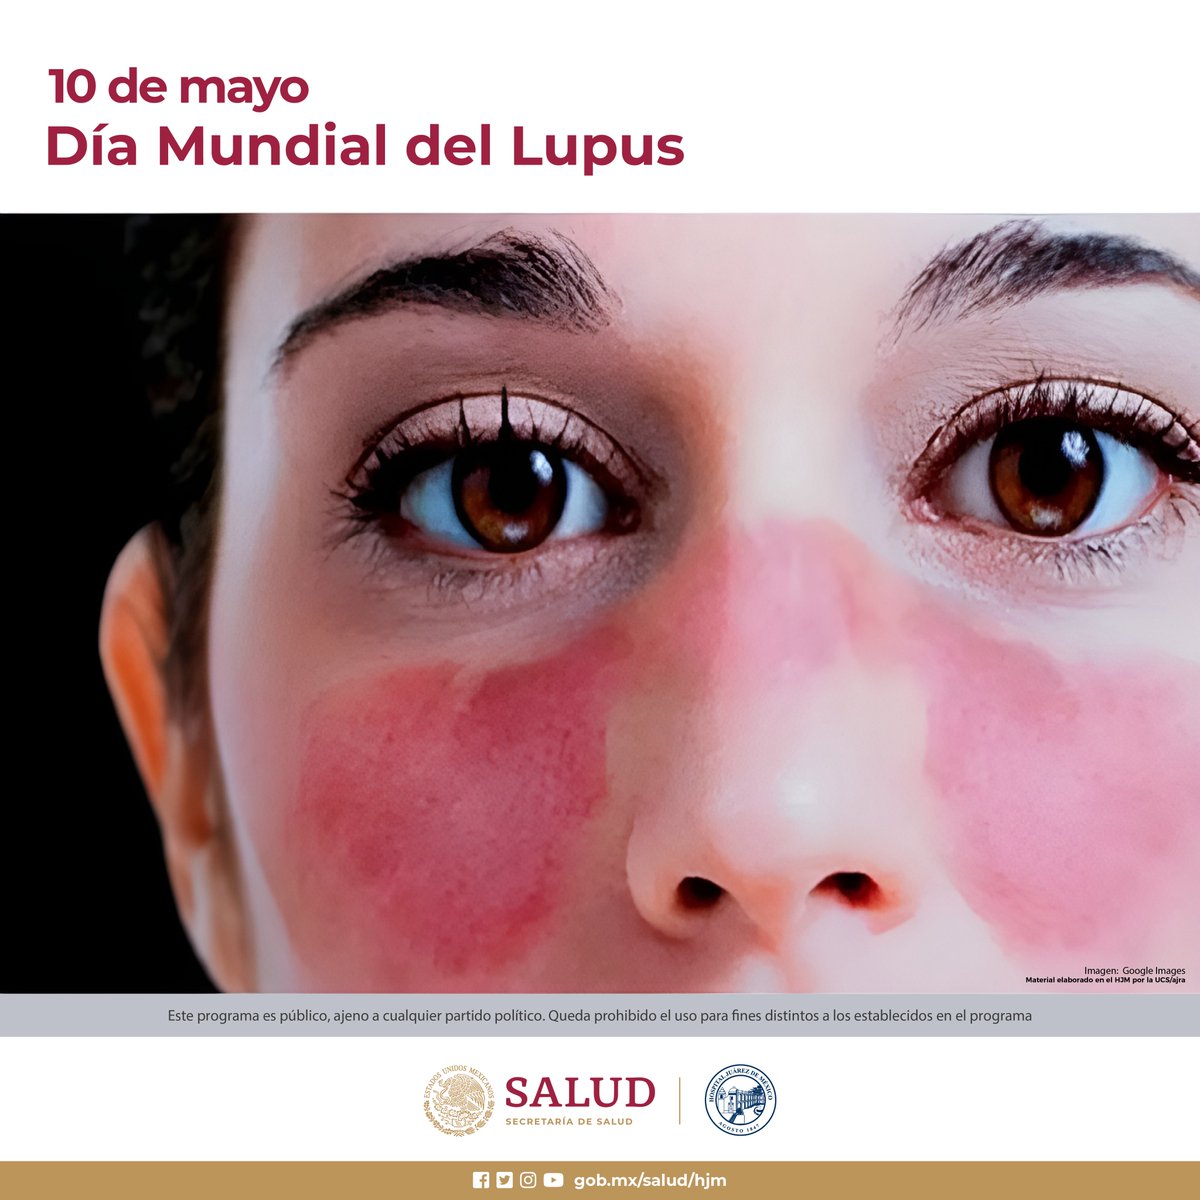 Día Mundial del lupus Es crónico pero controlable. Cansancio repentino, fiebre, erupciones rojas en la cara y úlceras en la boca, acude a revisión.